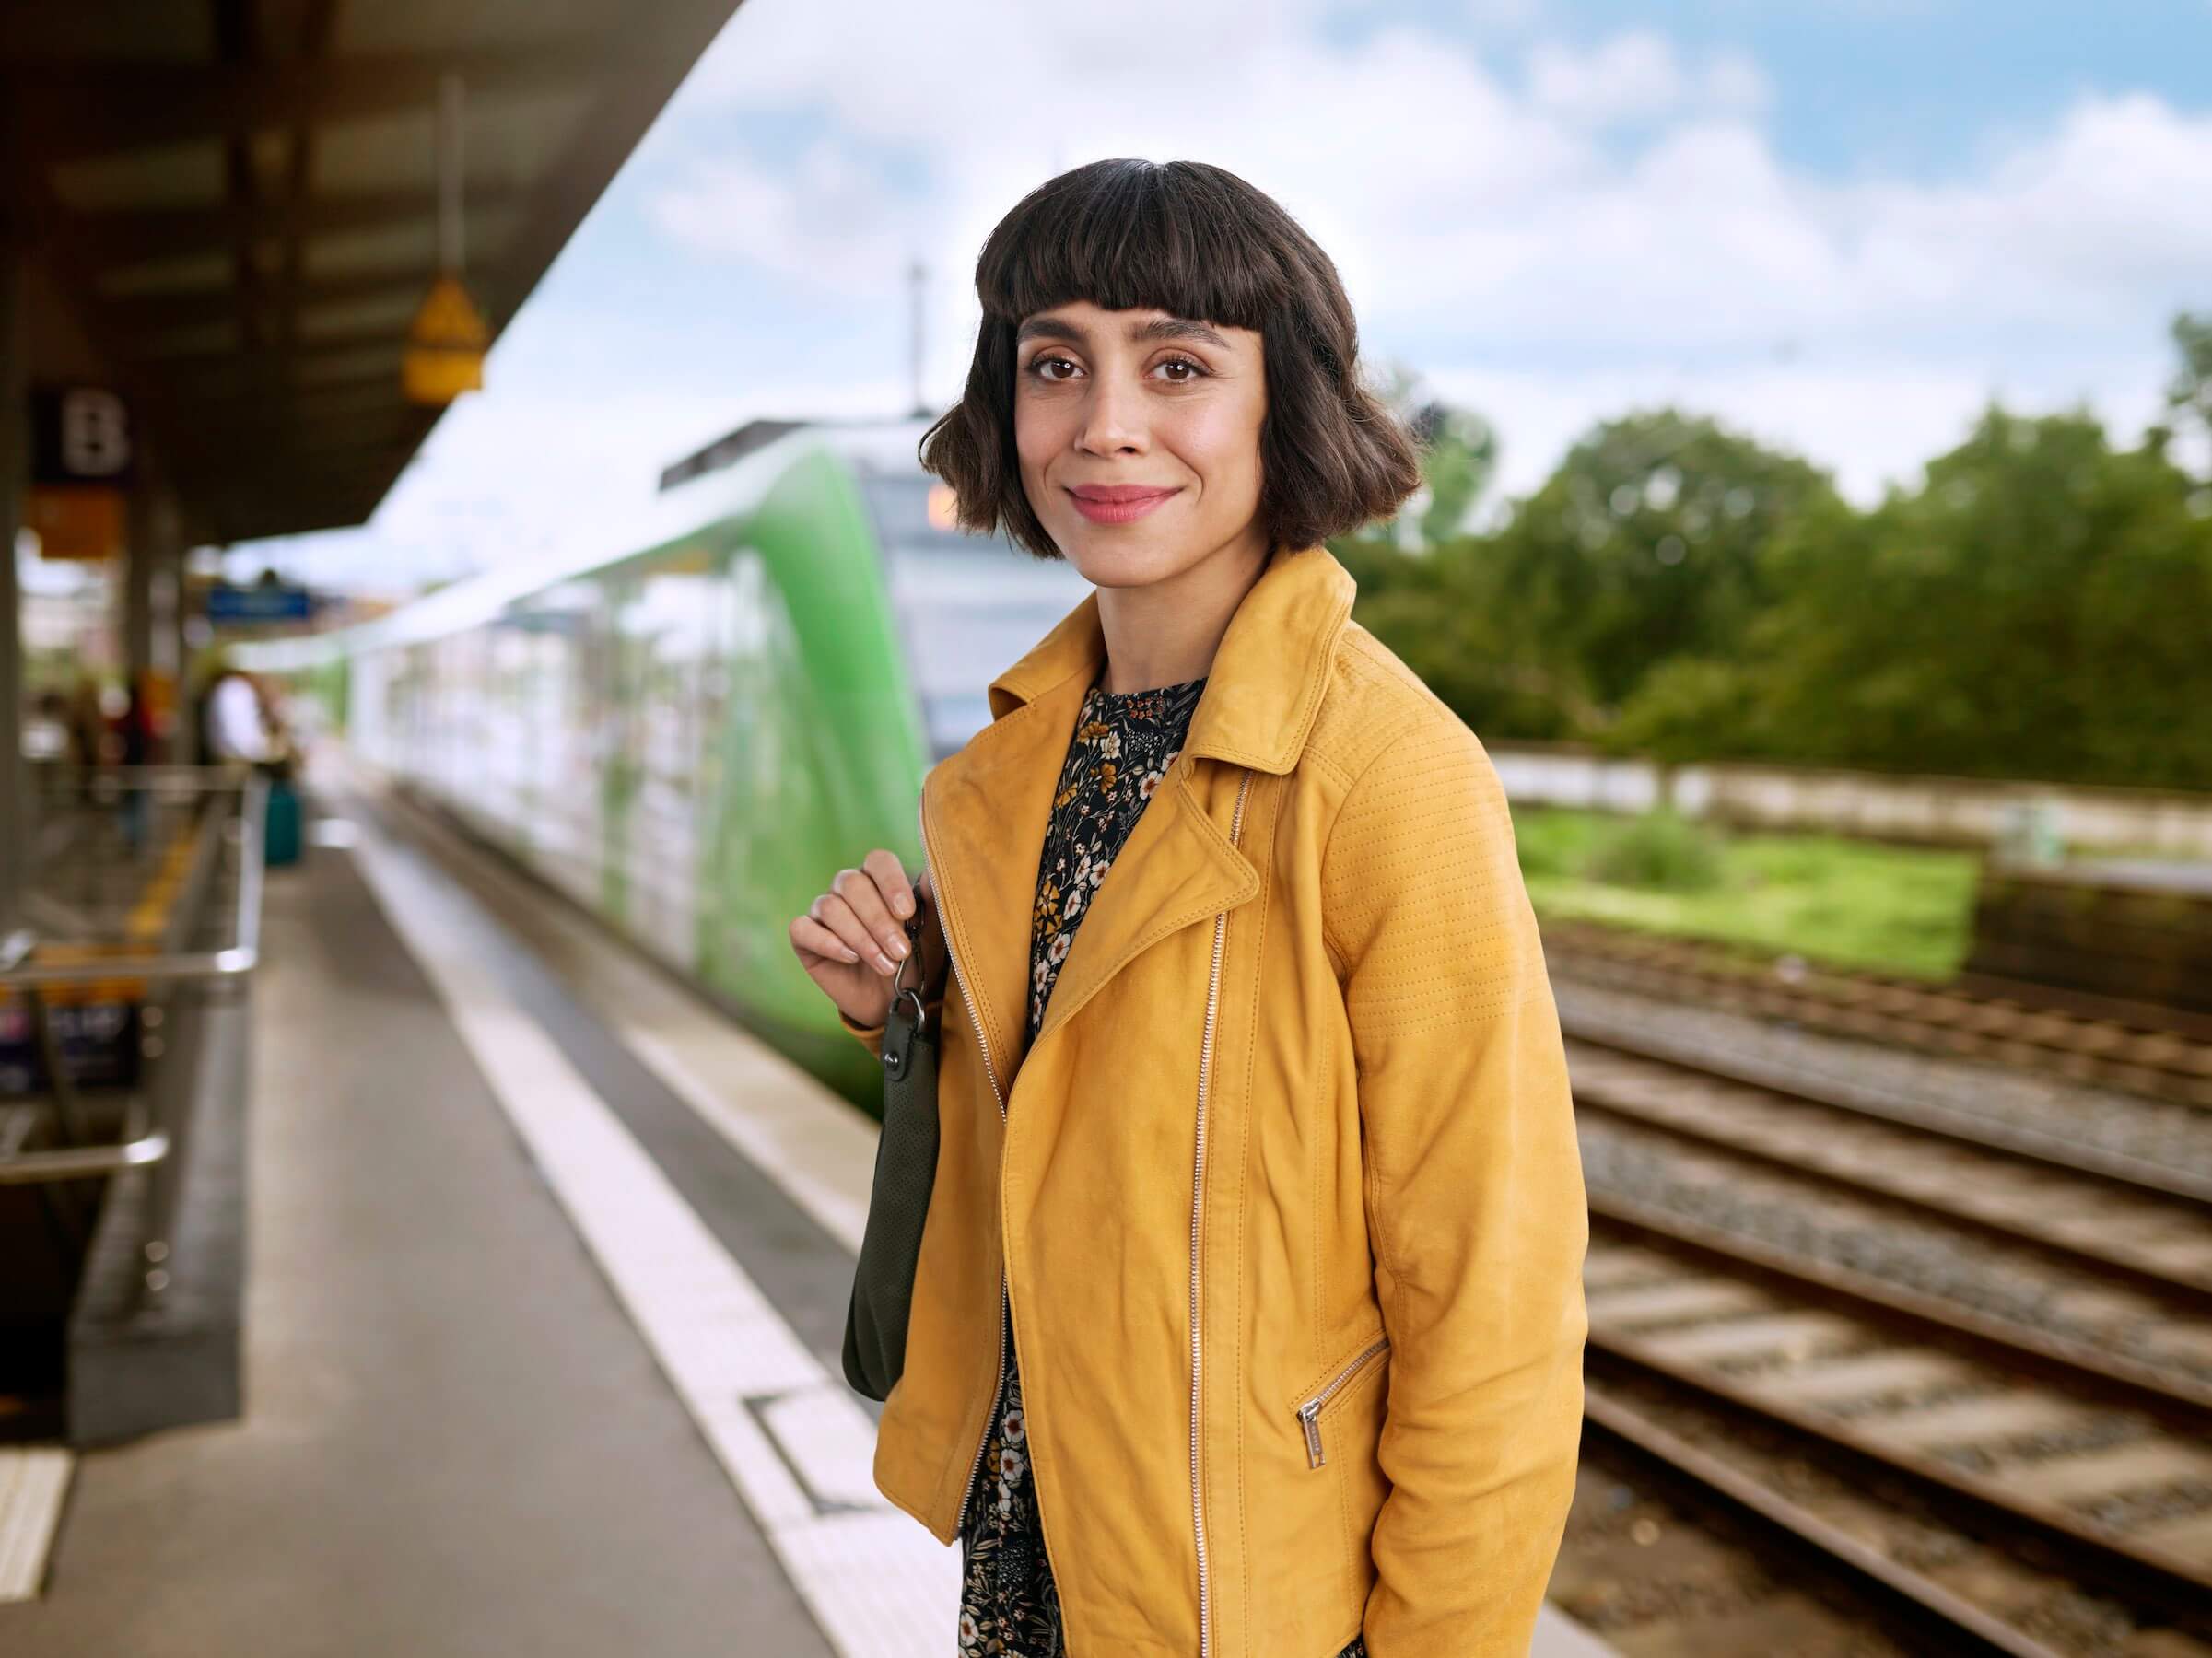 Eine Frau steht lächelnd am Bahngleis, hinter ihr ist eine S-Bahn